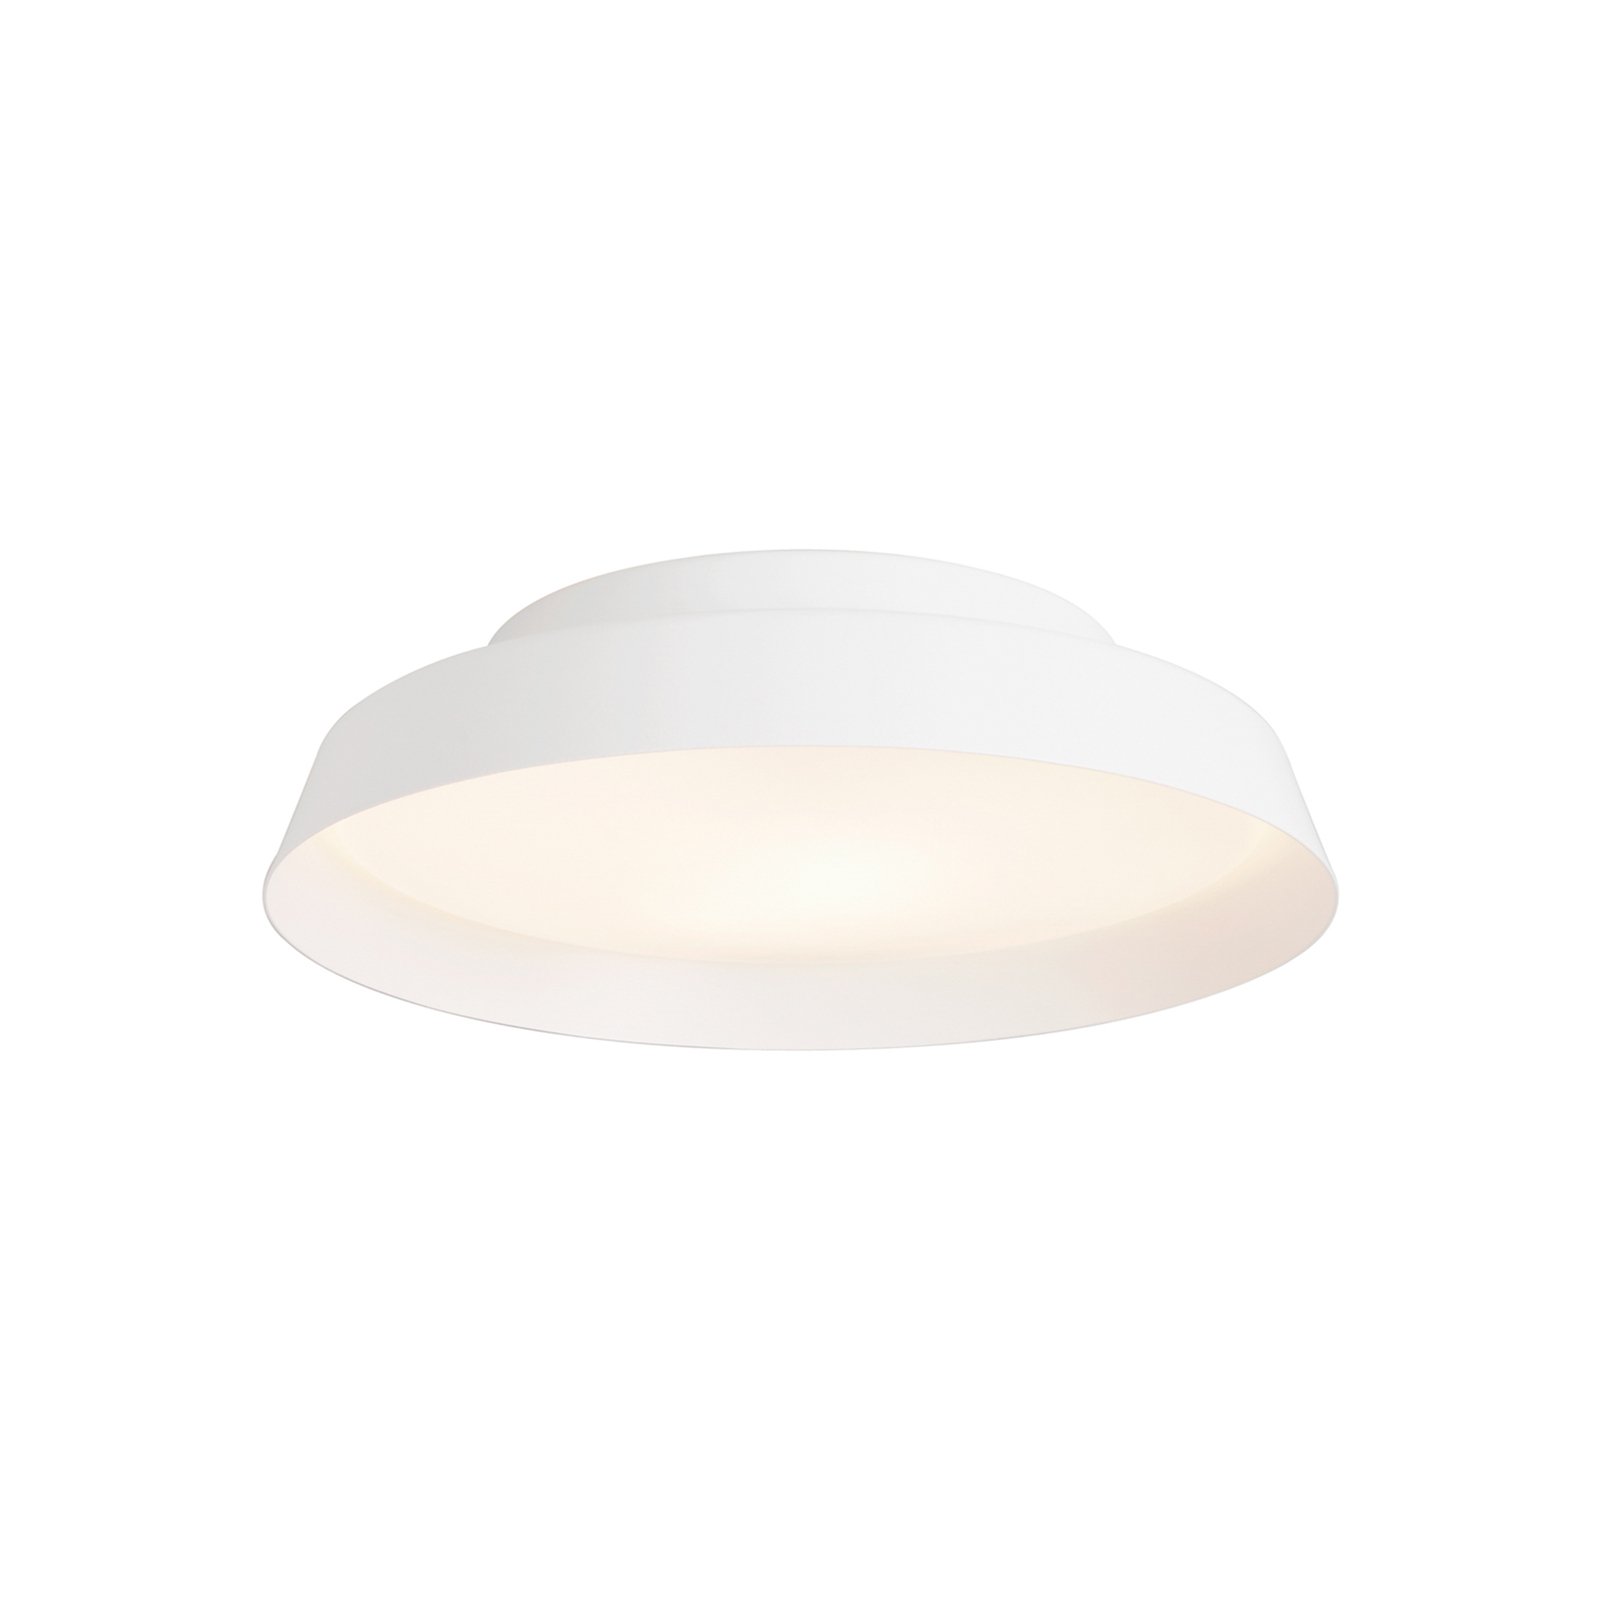 Boop! LED ceiling light Ø37cm white/white